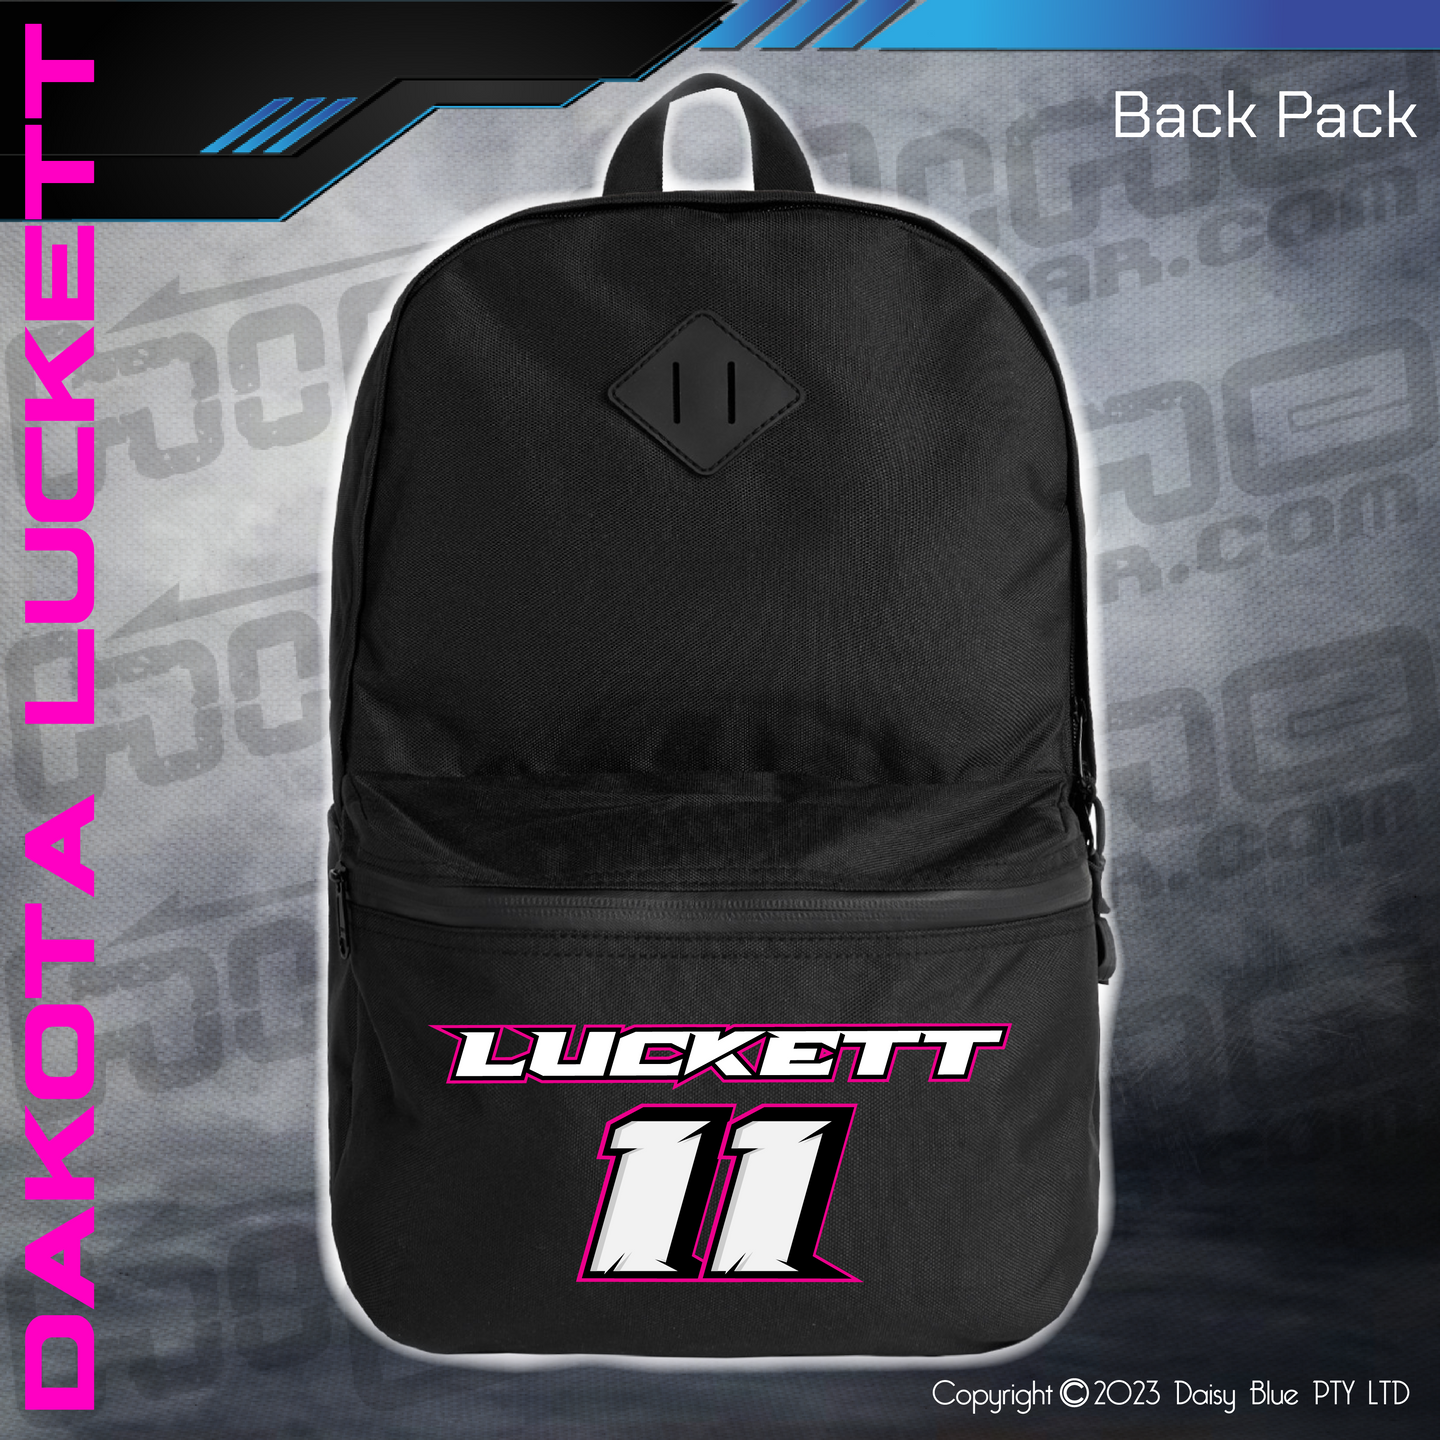 Back Pack - Dakota Luckett